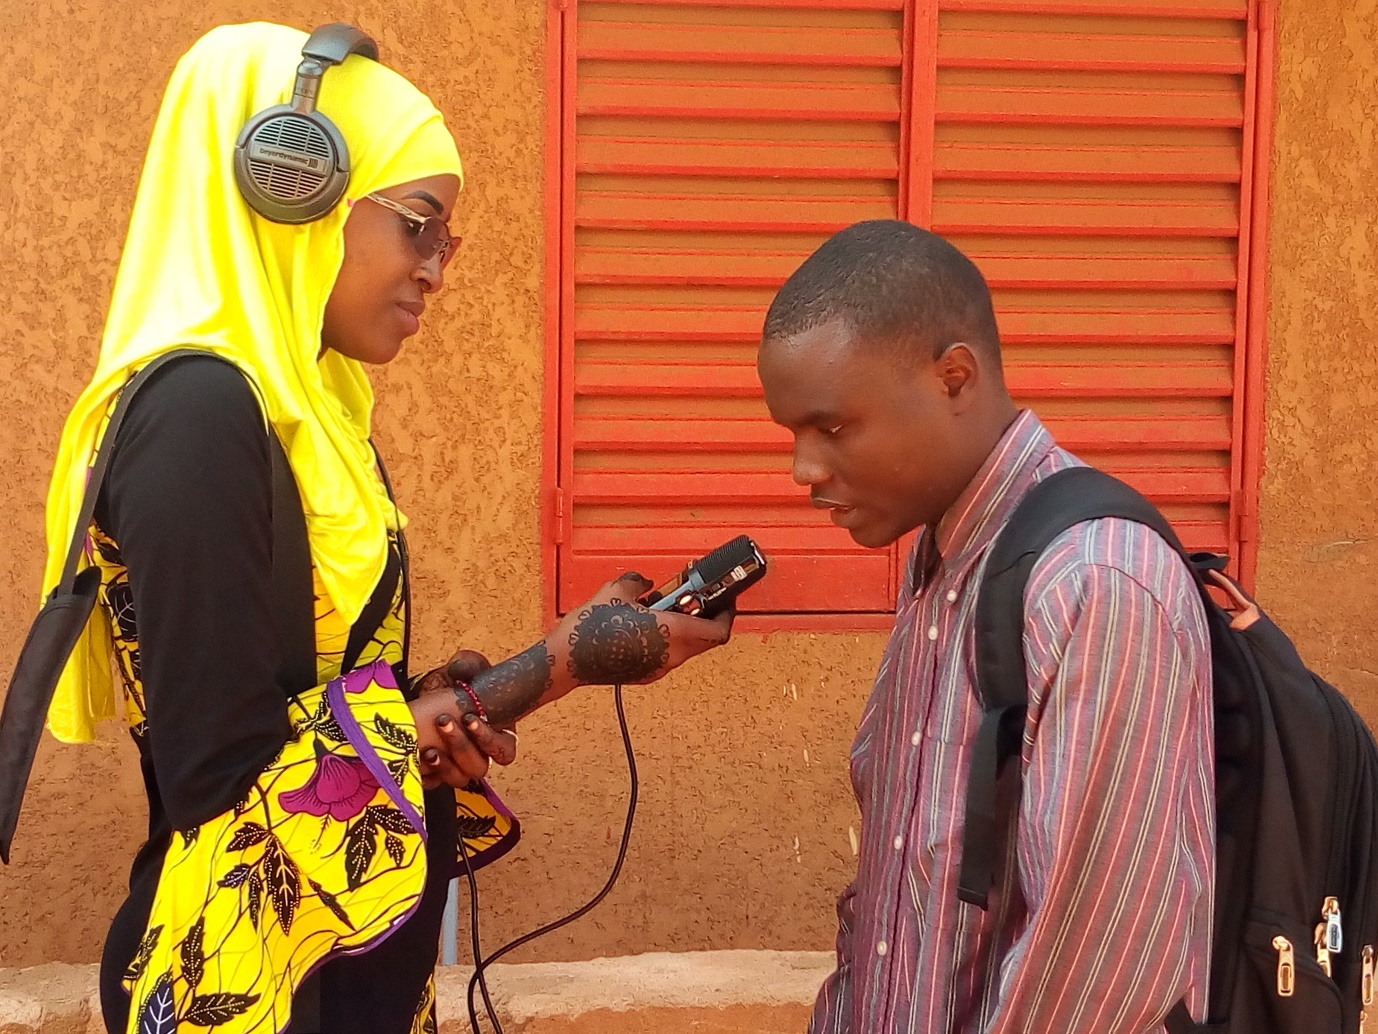 Le magazine du 03/12/2018 – Agadez : malvoyants et malentendants peu favorisés dans la poursuite de leur cursus scolaire